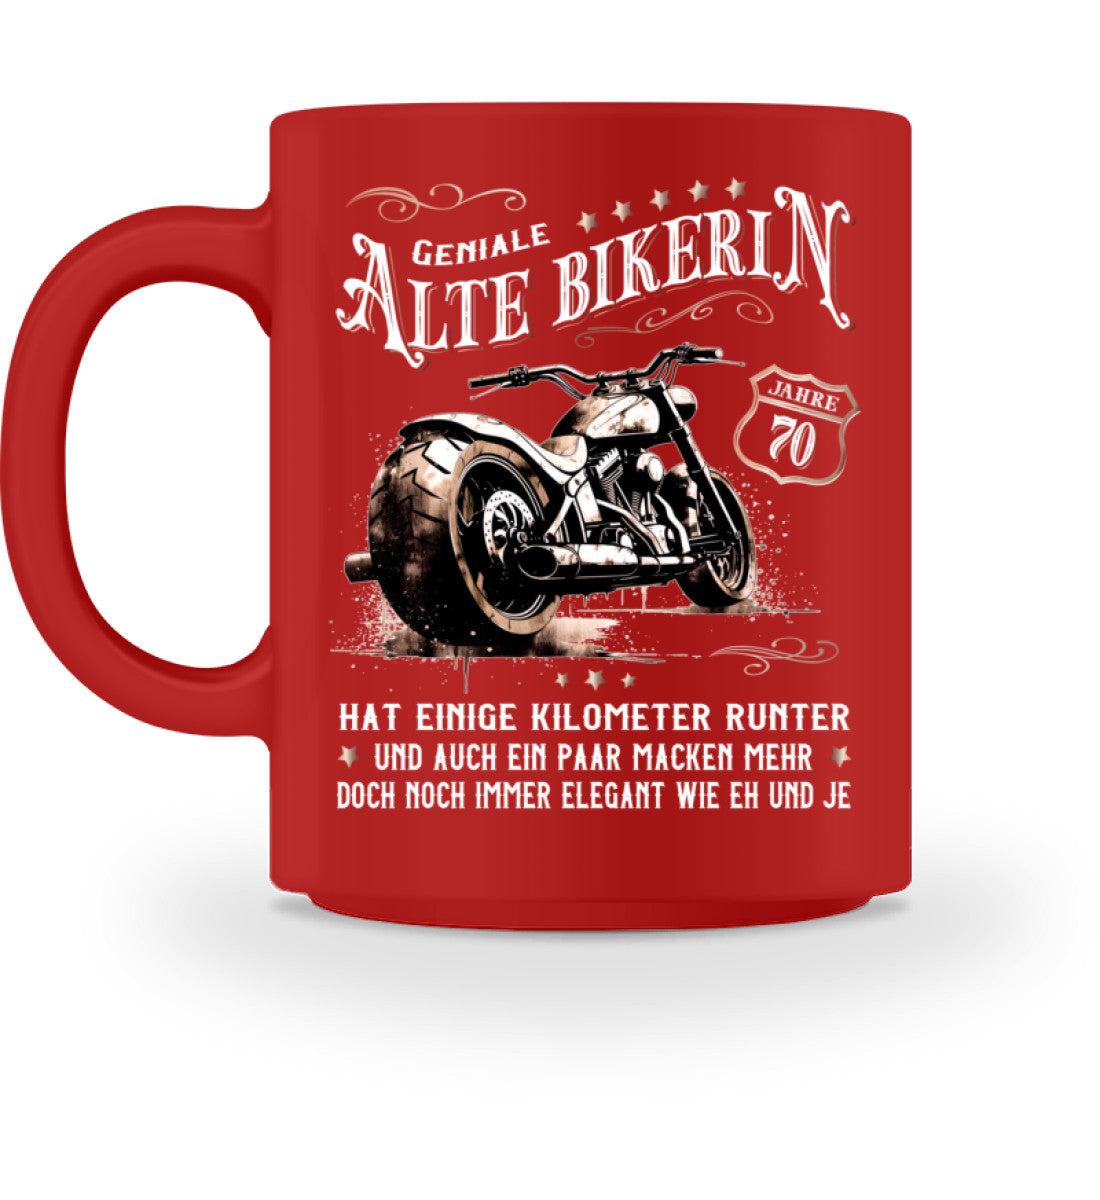 Eine Bikerin Geburtstags-Tasse für Motorradfahrerinnen, von Wingbikers, mit dem beidseitigen Aufdruck, Alte Bikerin - 70 Jahre - Einige Kilometer Runter - Doch elegant wie eh und je, in rot.